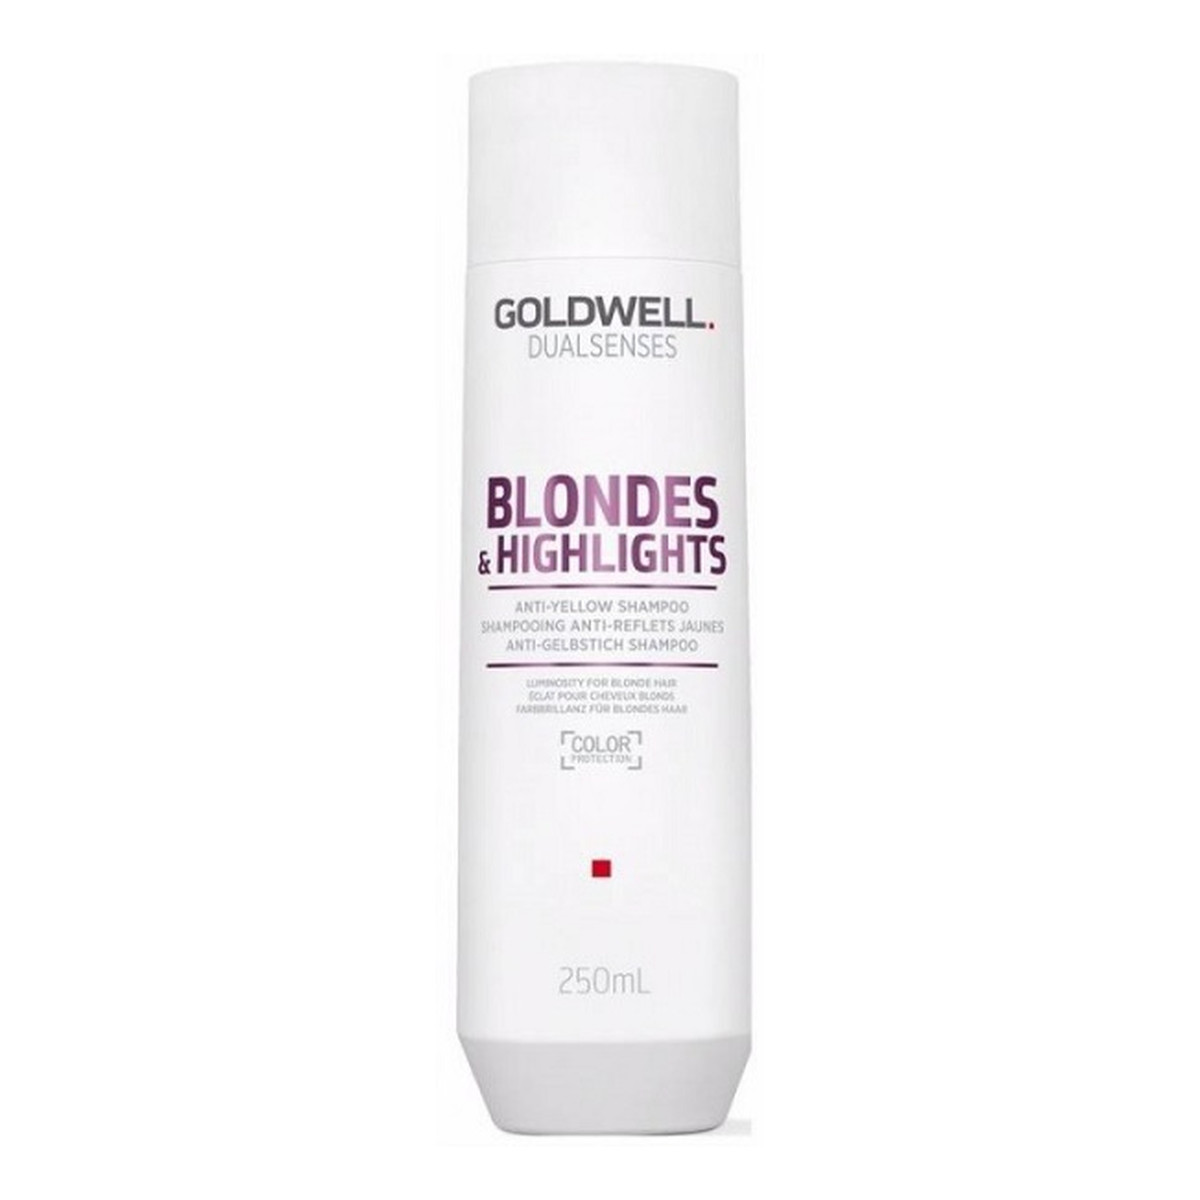 Goldwell Dualsenses blondes & highlights anti-yellow shampoo szampon do włosów blond neutralizujący żółty odcień 250ml